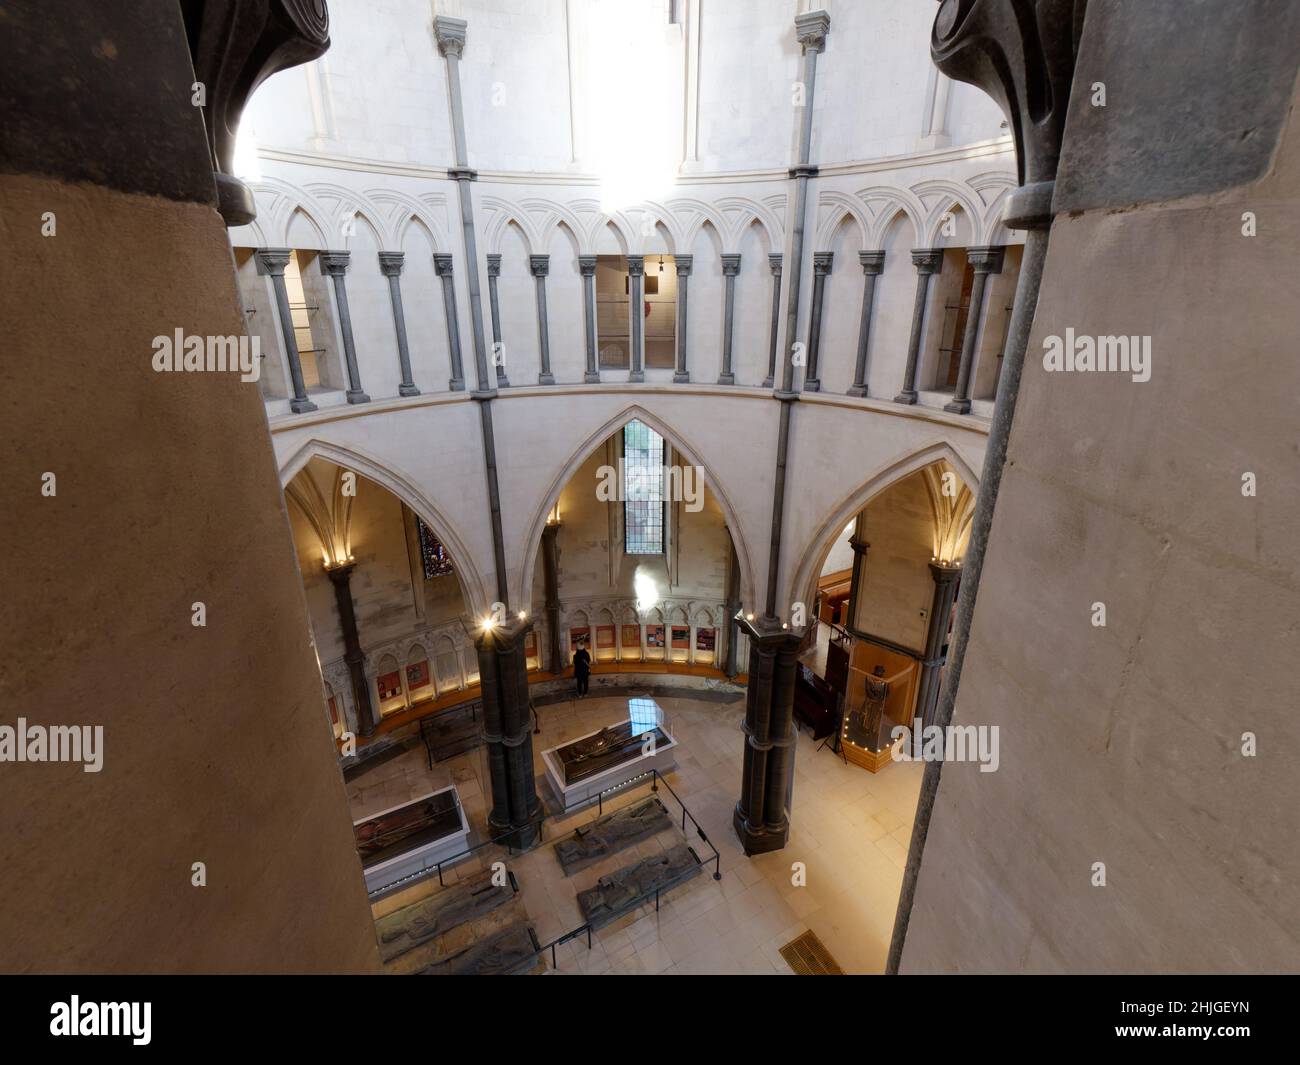 Londres, Grand Londres, Angleterre, janvier 5th 2022 : intérieur de l'église du Temple dans le quartier du Temple de Londres, construit par les célèbres Templiers. Banque D'Images